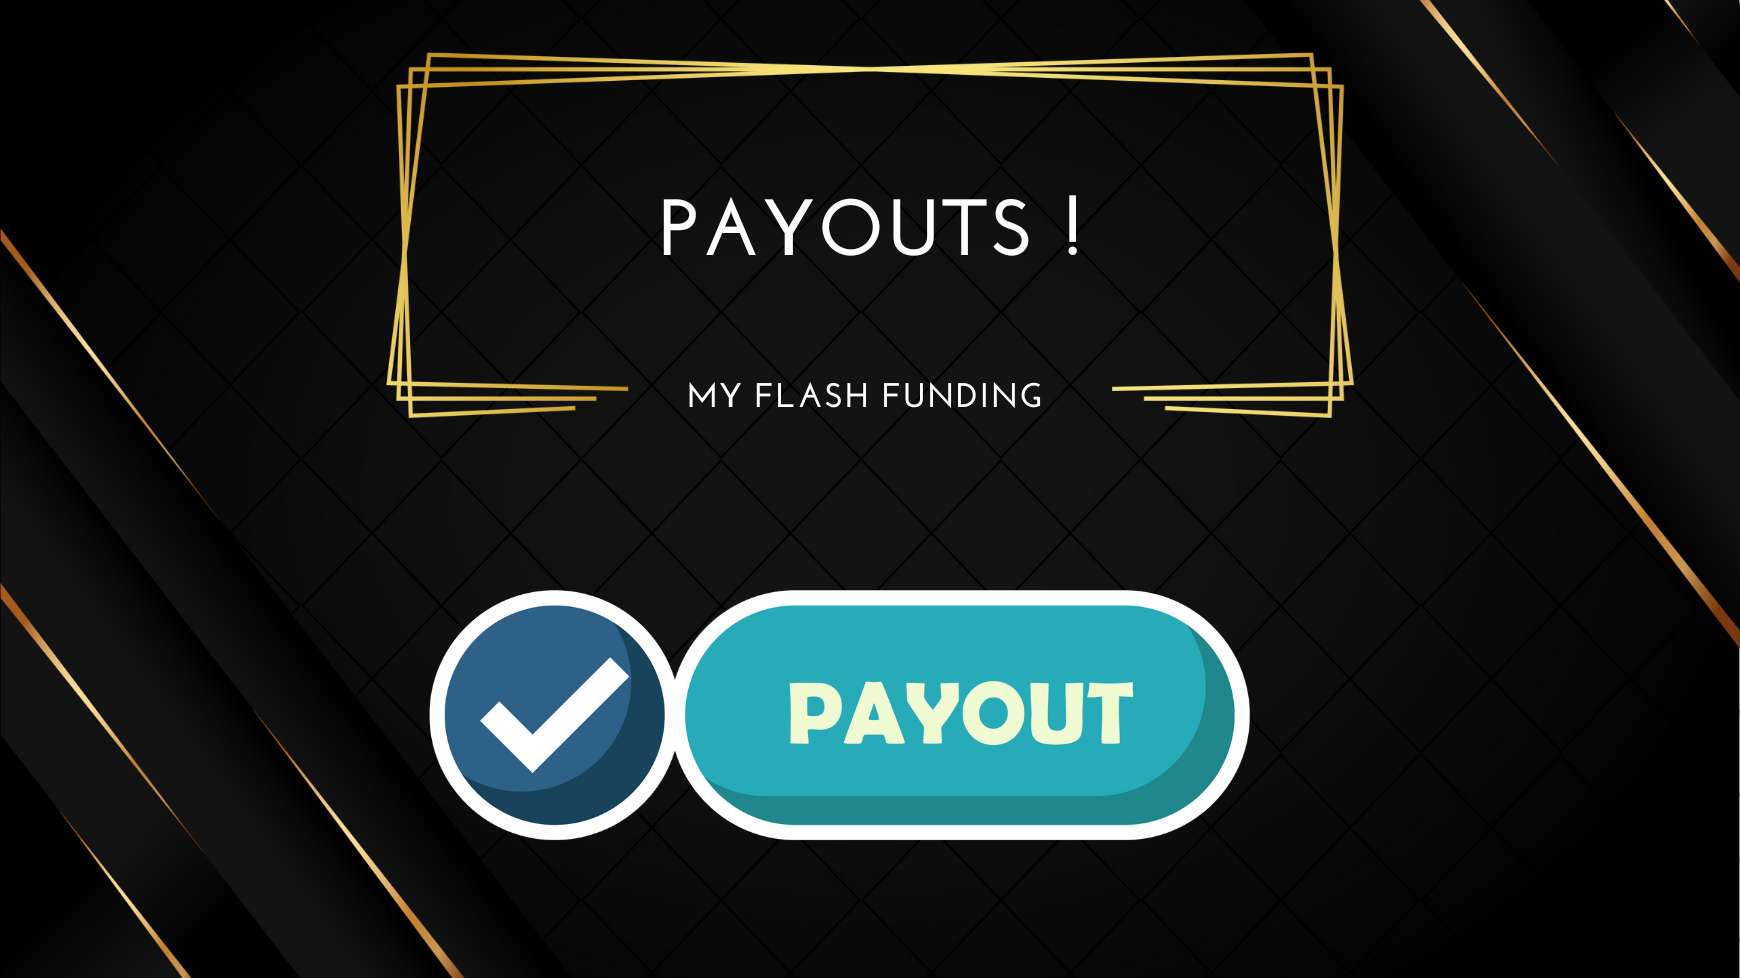 MyFlashFunding October Payouts